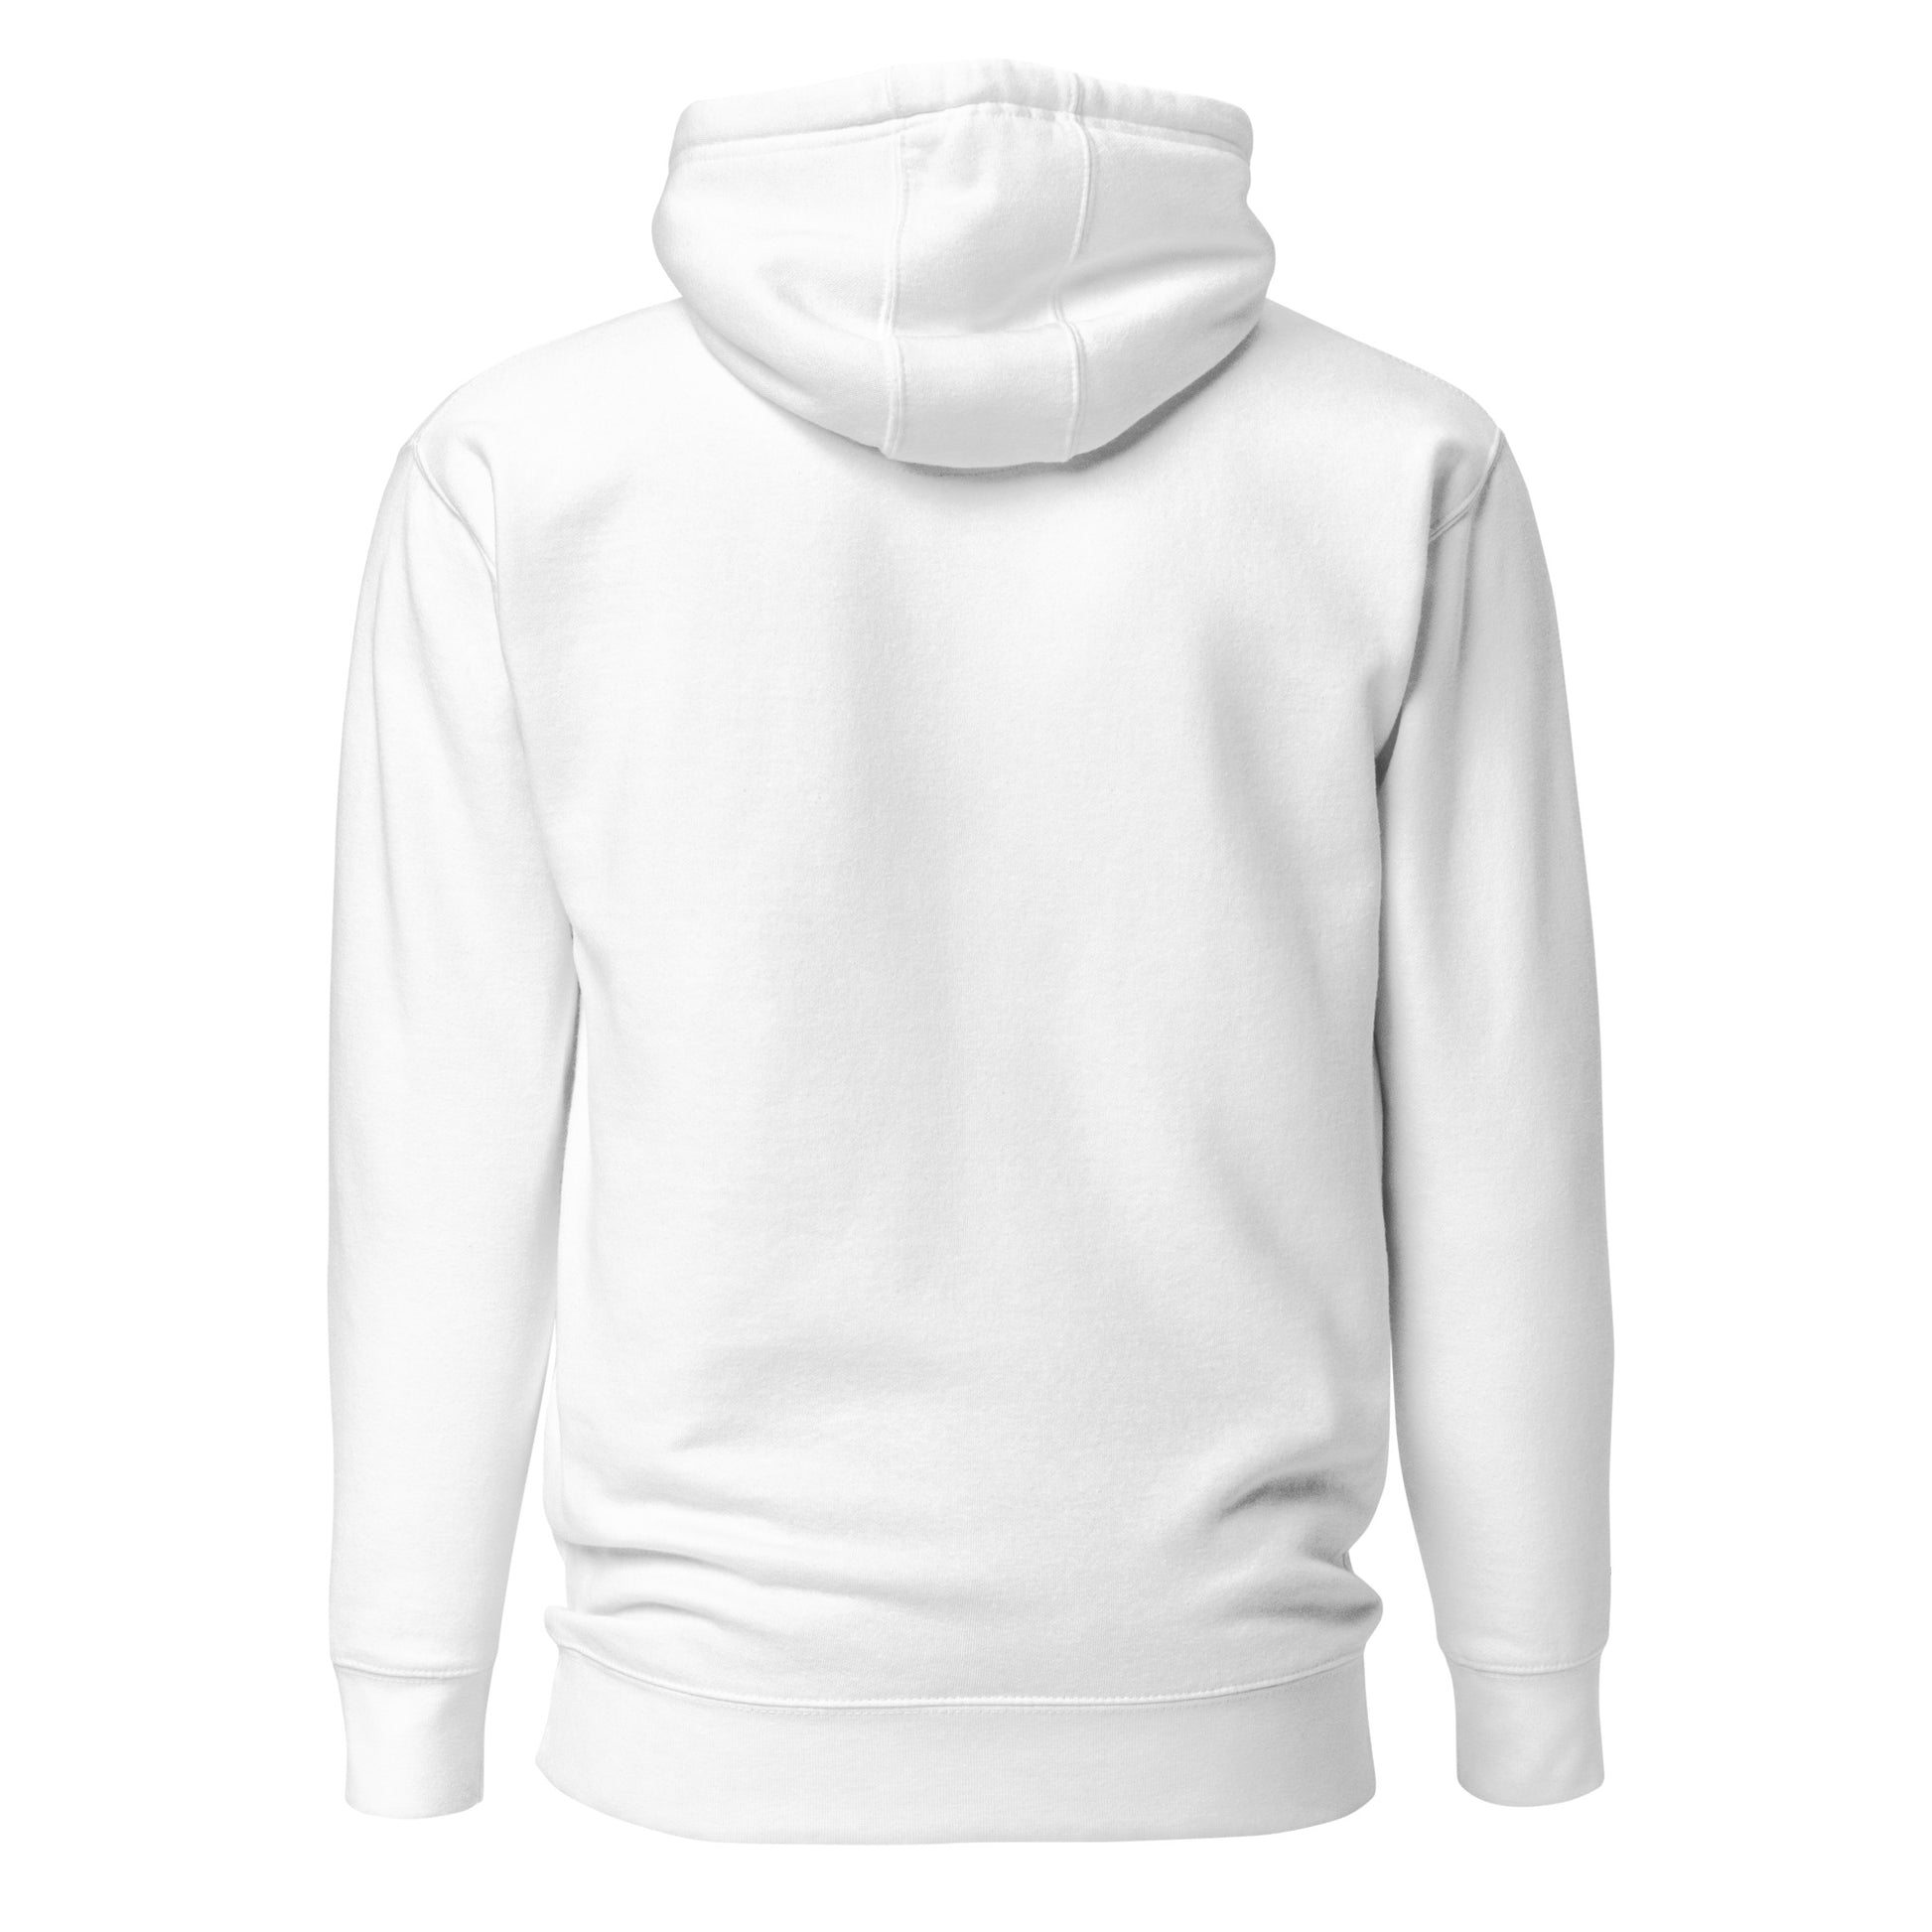 Simpele witte hoodie van stevige kwaliteit.